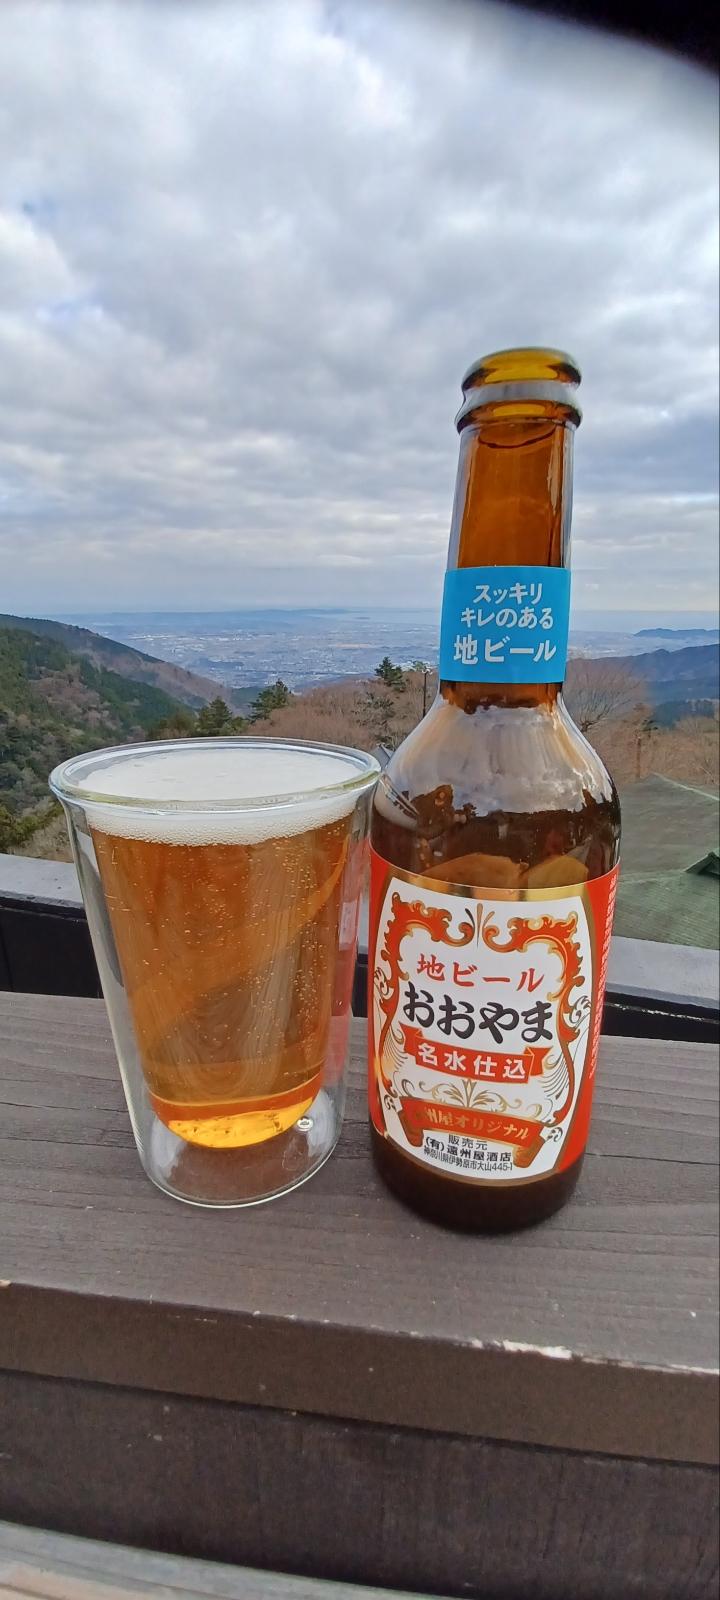 Ooyama Beer